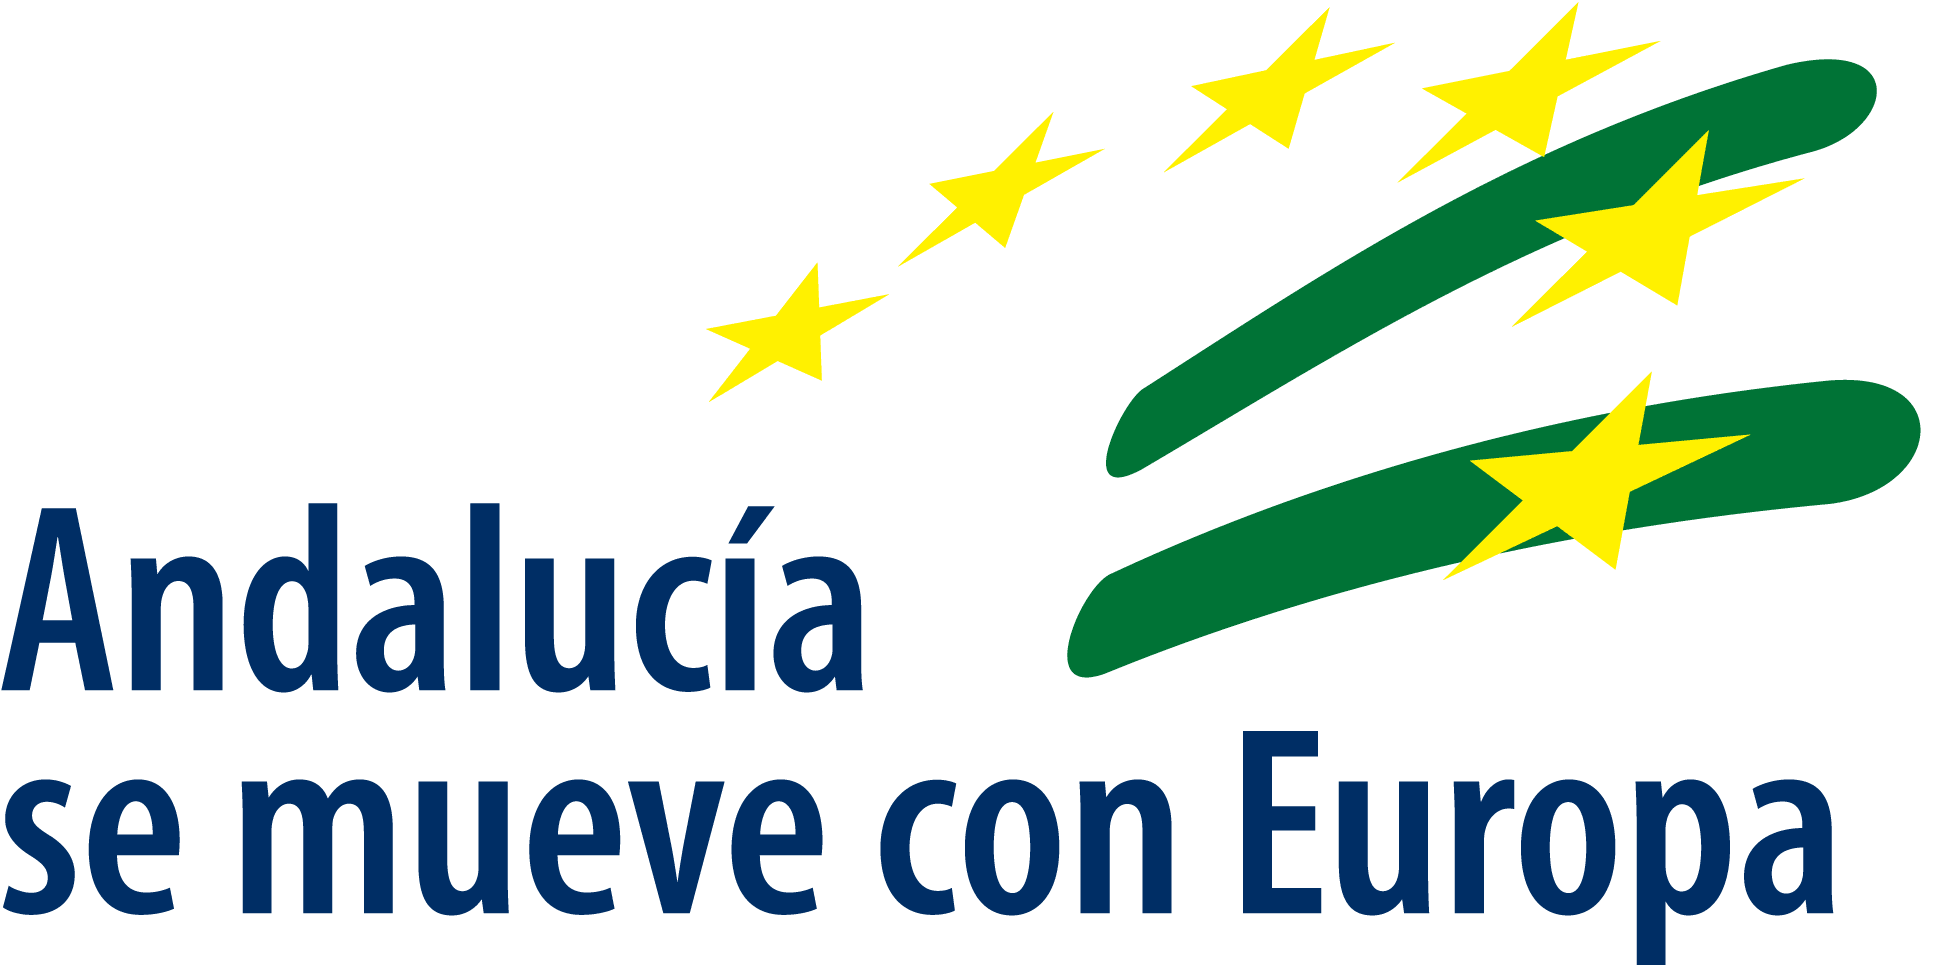 Andalucia Europa